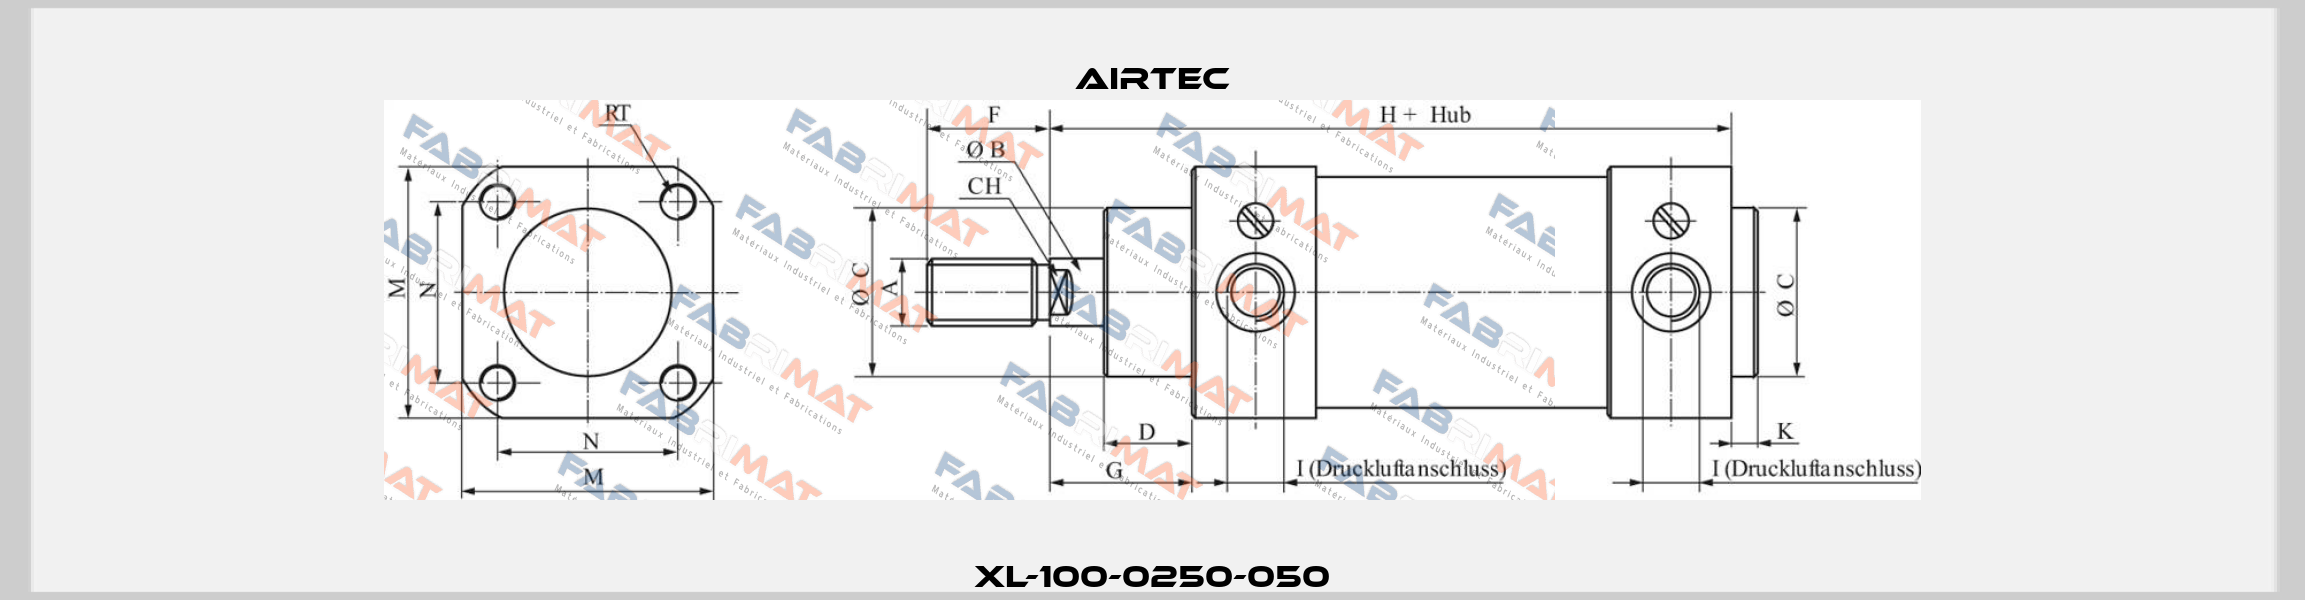 XL-100-0250-050 Airtec